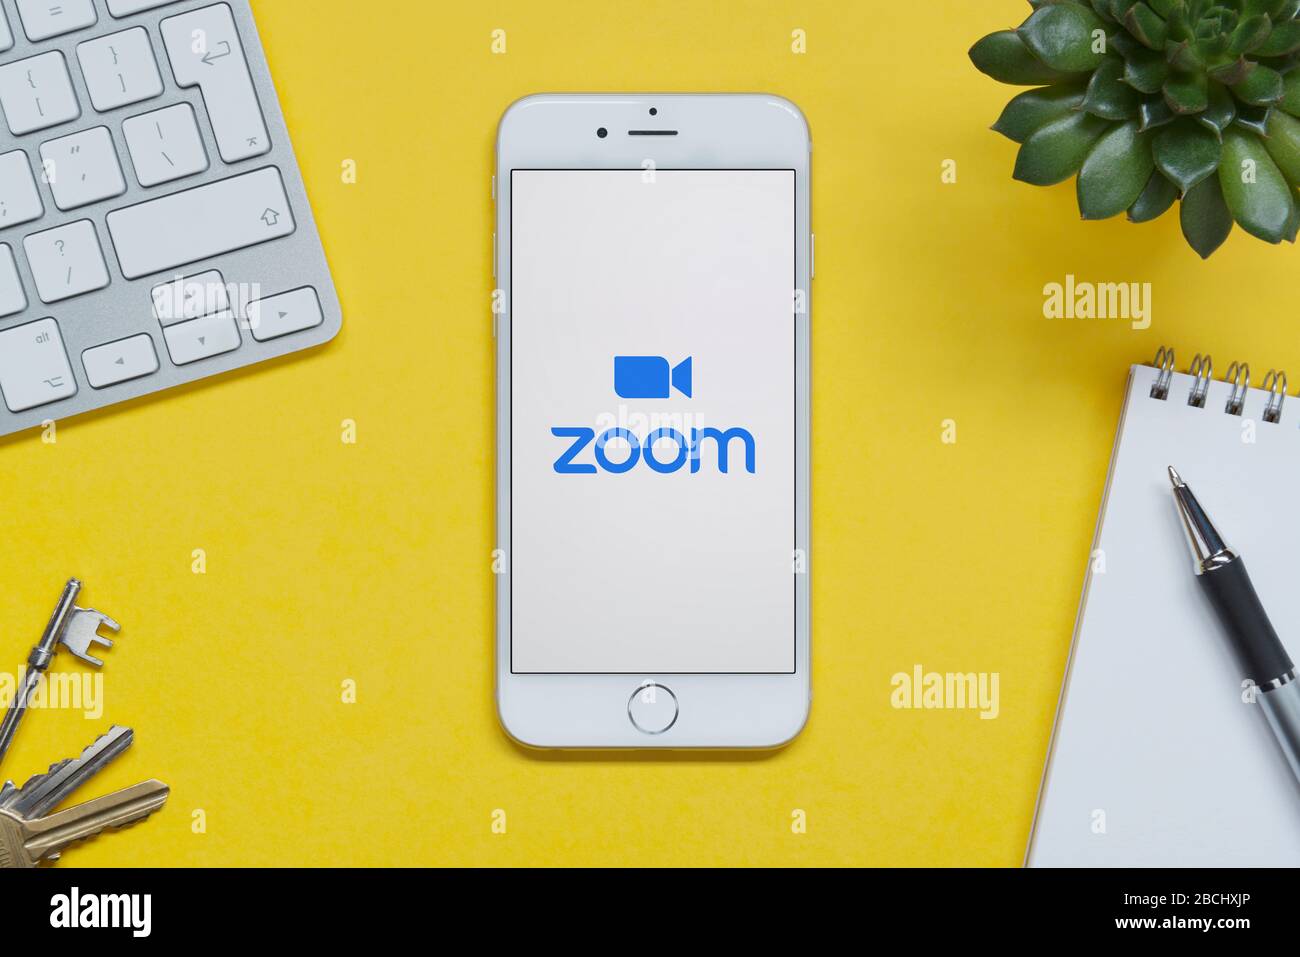 Ein iPhone mit Zoom-Logo liegt auf einem gelben Hintergrund Tisch mit Tastatur, Tasten, Notizblock und Pflanze (nur für redaktionelle Verwendung). Stockfoto